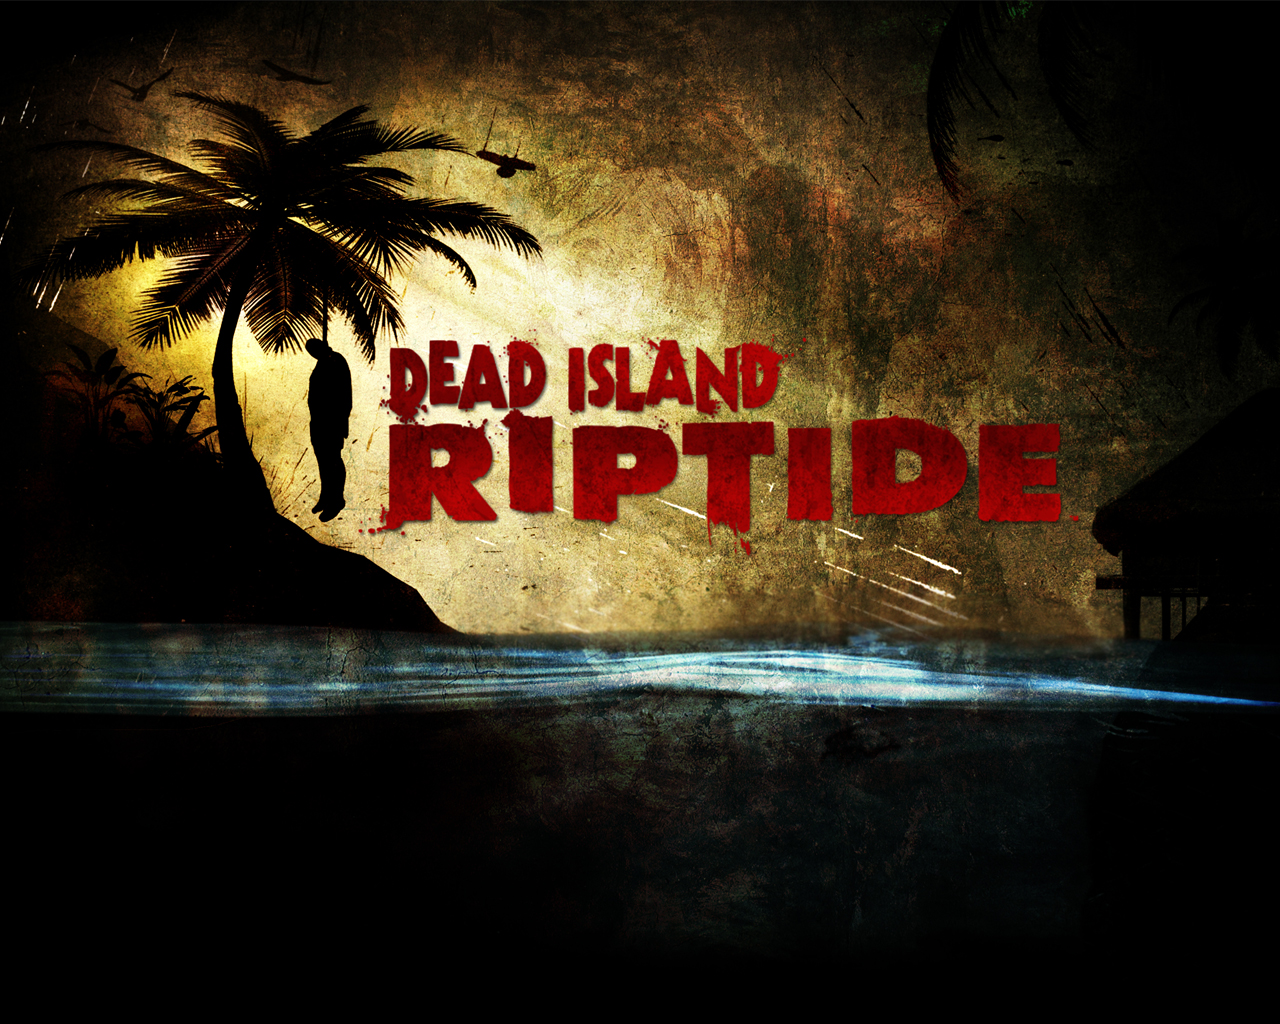 Dead Island Riptide Cgi Trailer